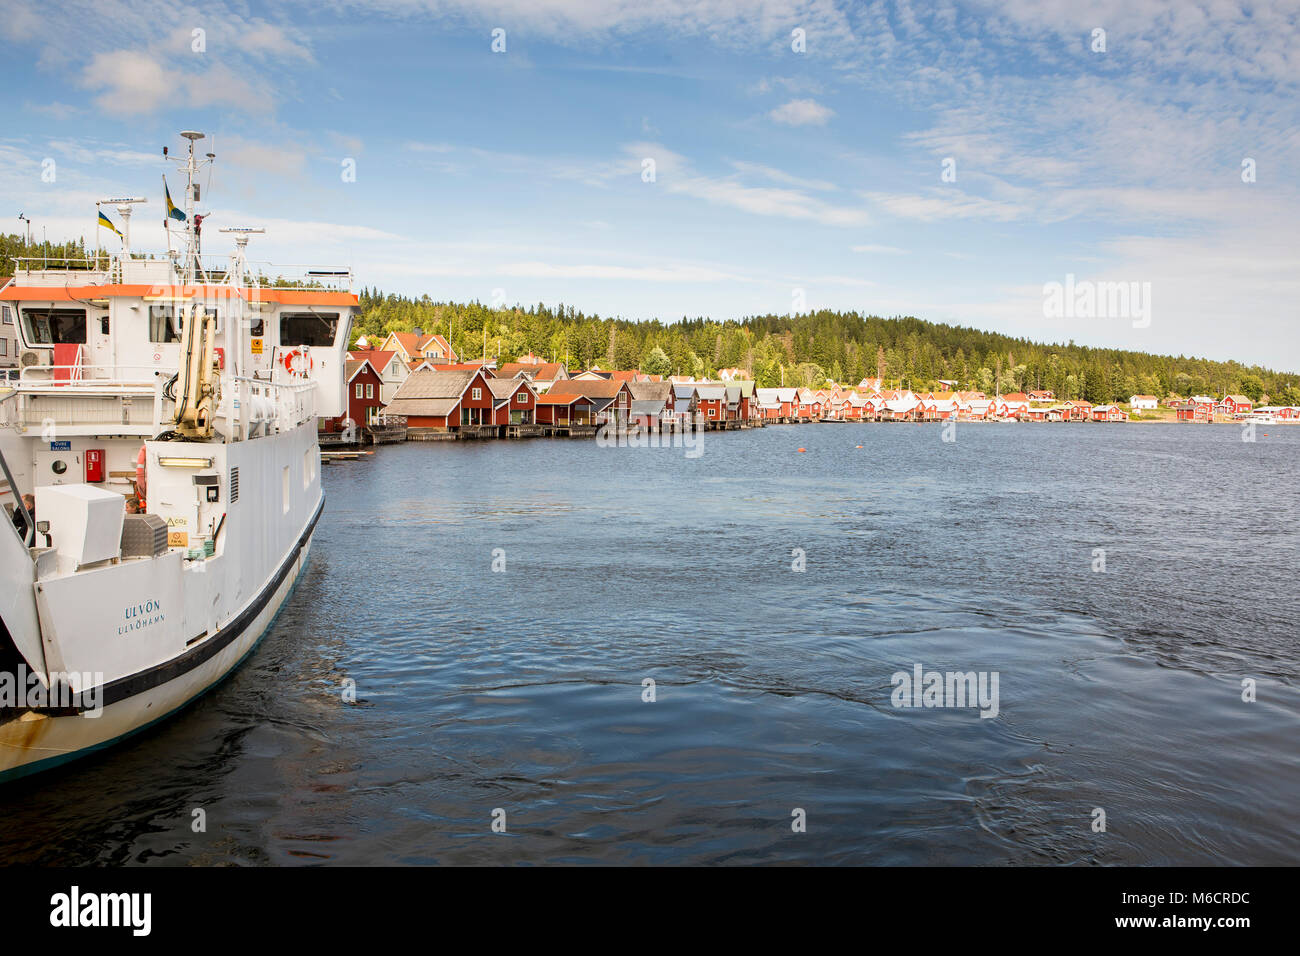 Le port d'Ulvon, Suède, où de petites maisons en bois rouge, sont construites à la flottaison. Banque D'Images